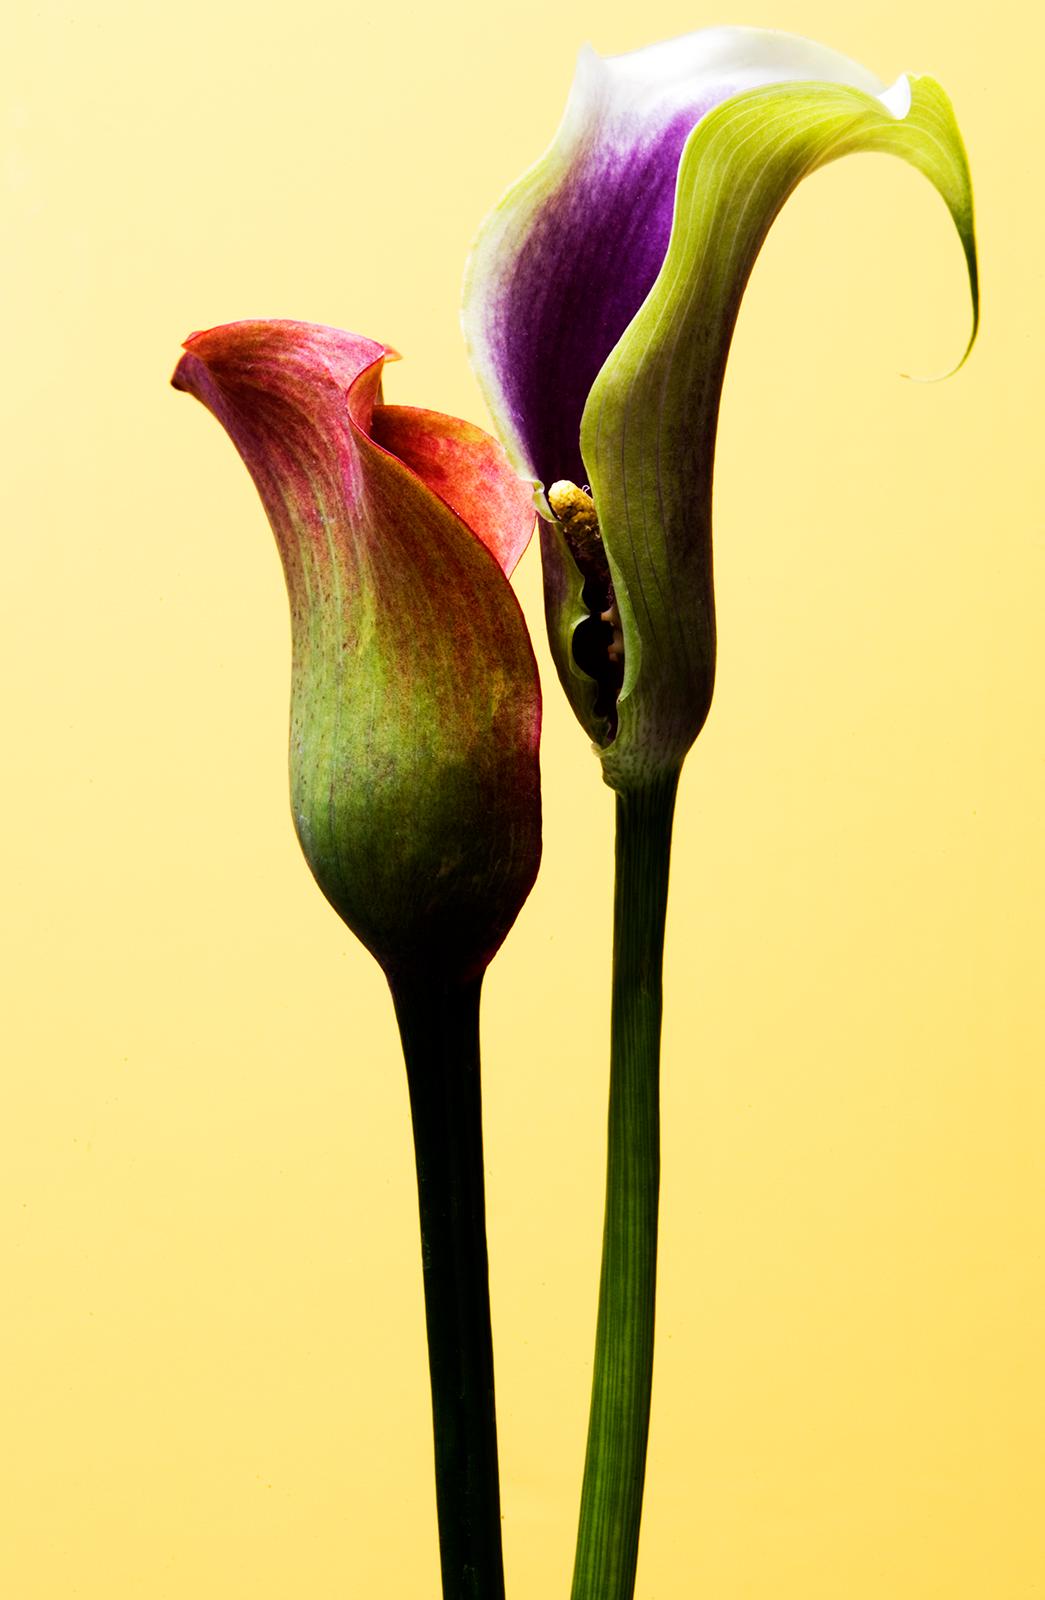 Blumen – signierter Kunstdruck in limitierter Auflage, Farb- Naturfotografie